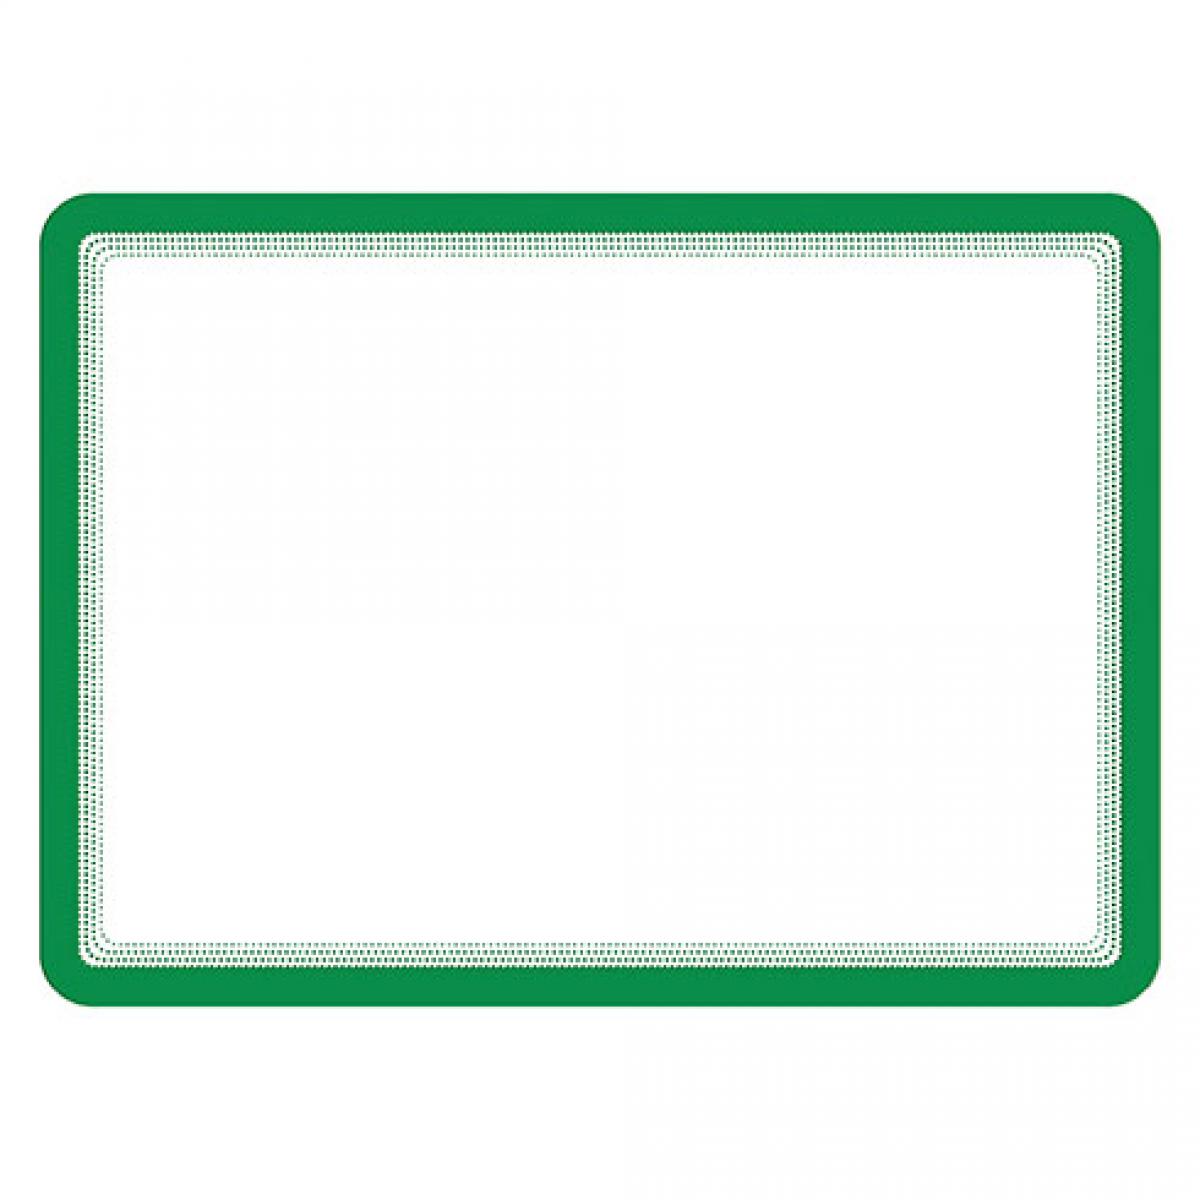 Tarifold - Pochette adhésive Magneto Tarifold vert- Poster A4 - Lot de 2 - Accessoires Bureau